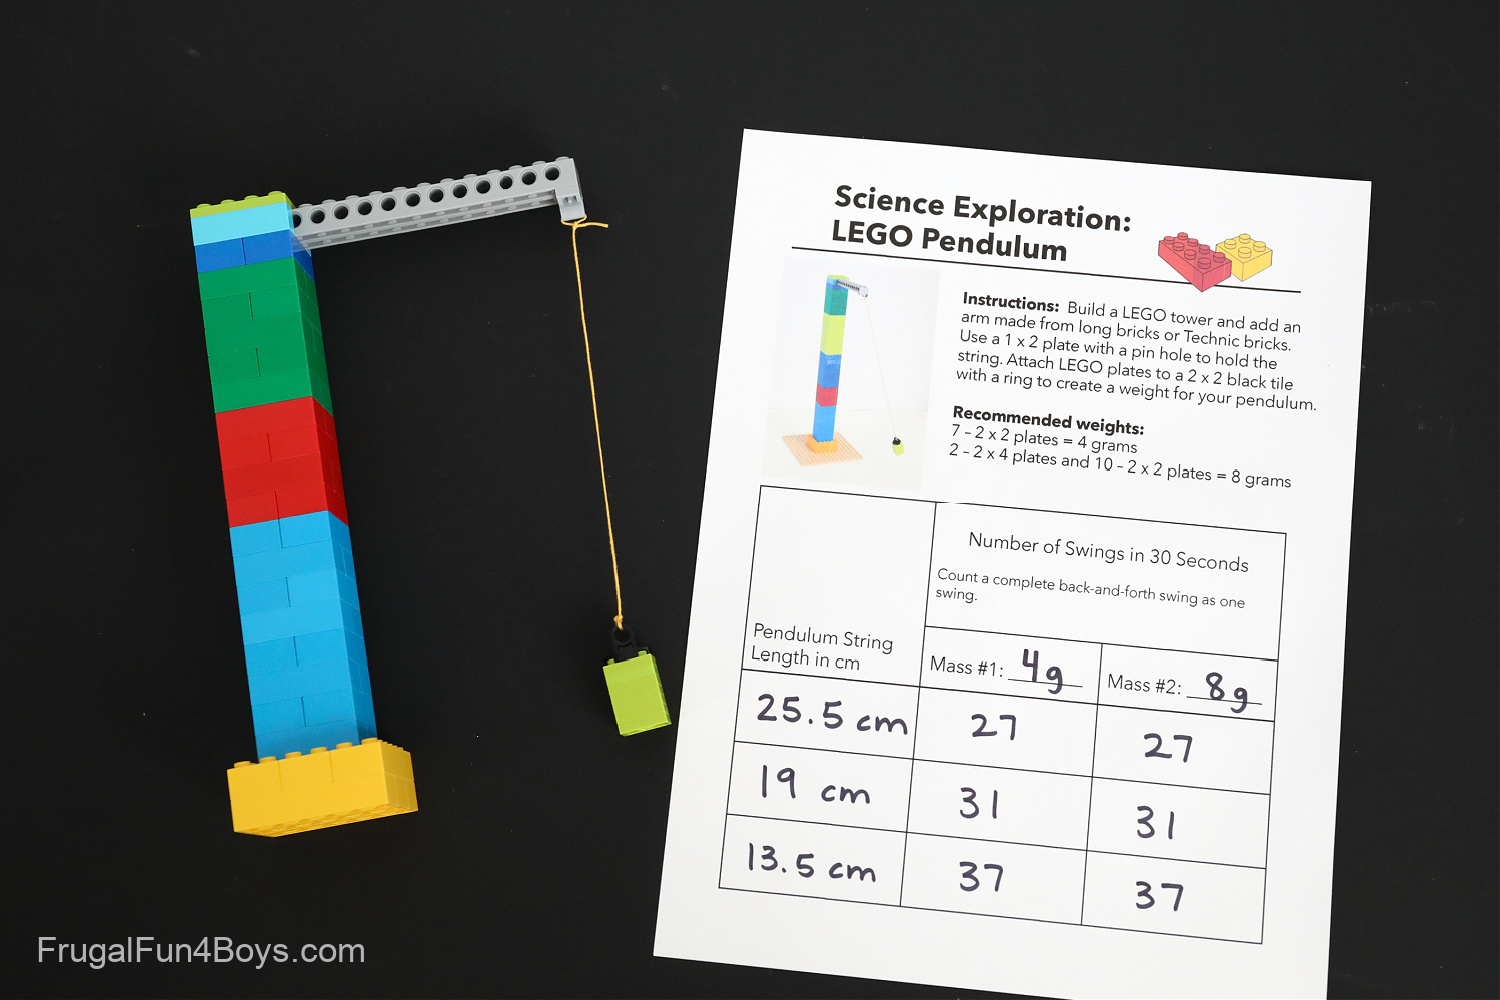 LEGO Pendulum Science Experiment